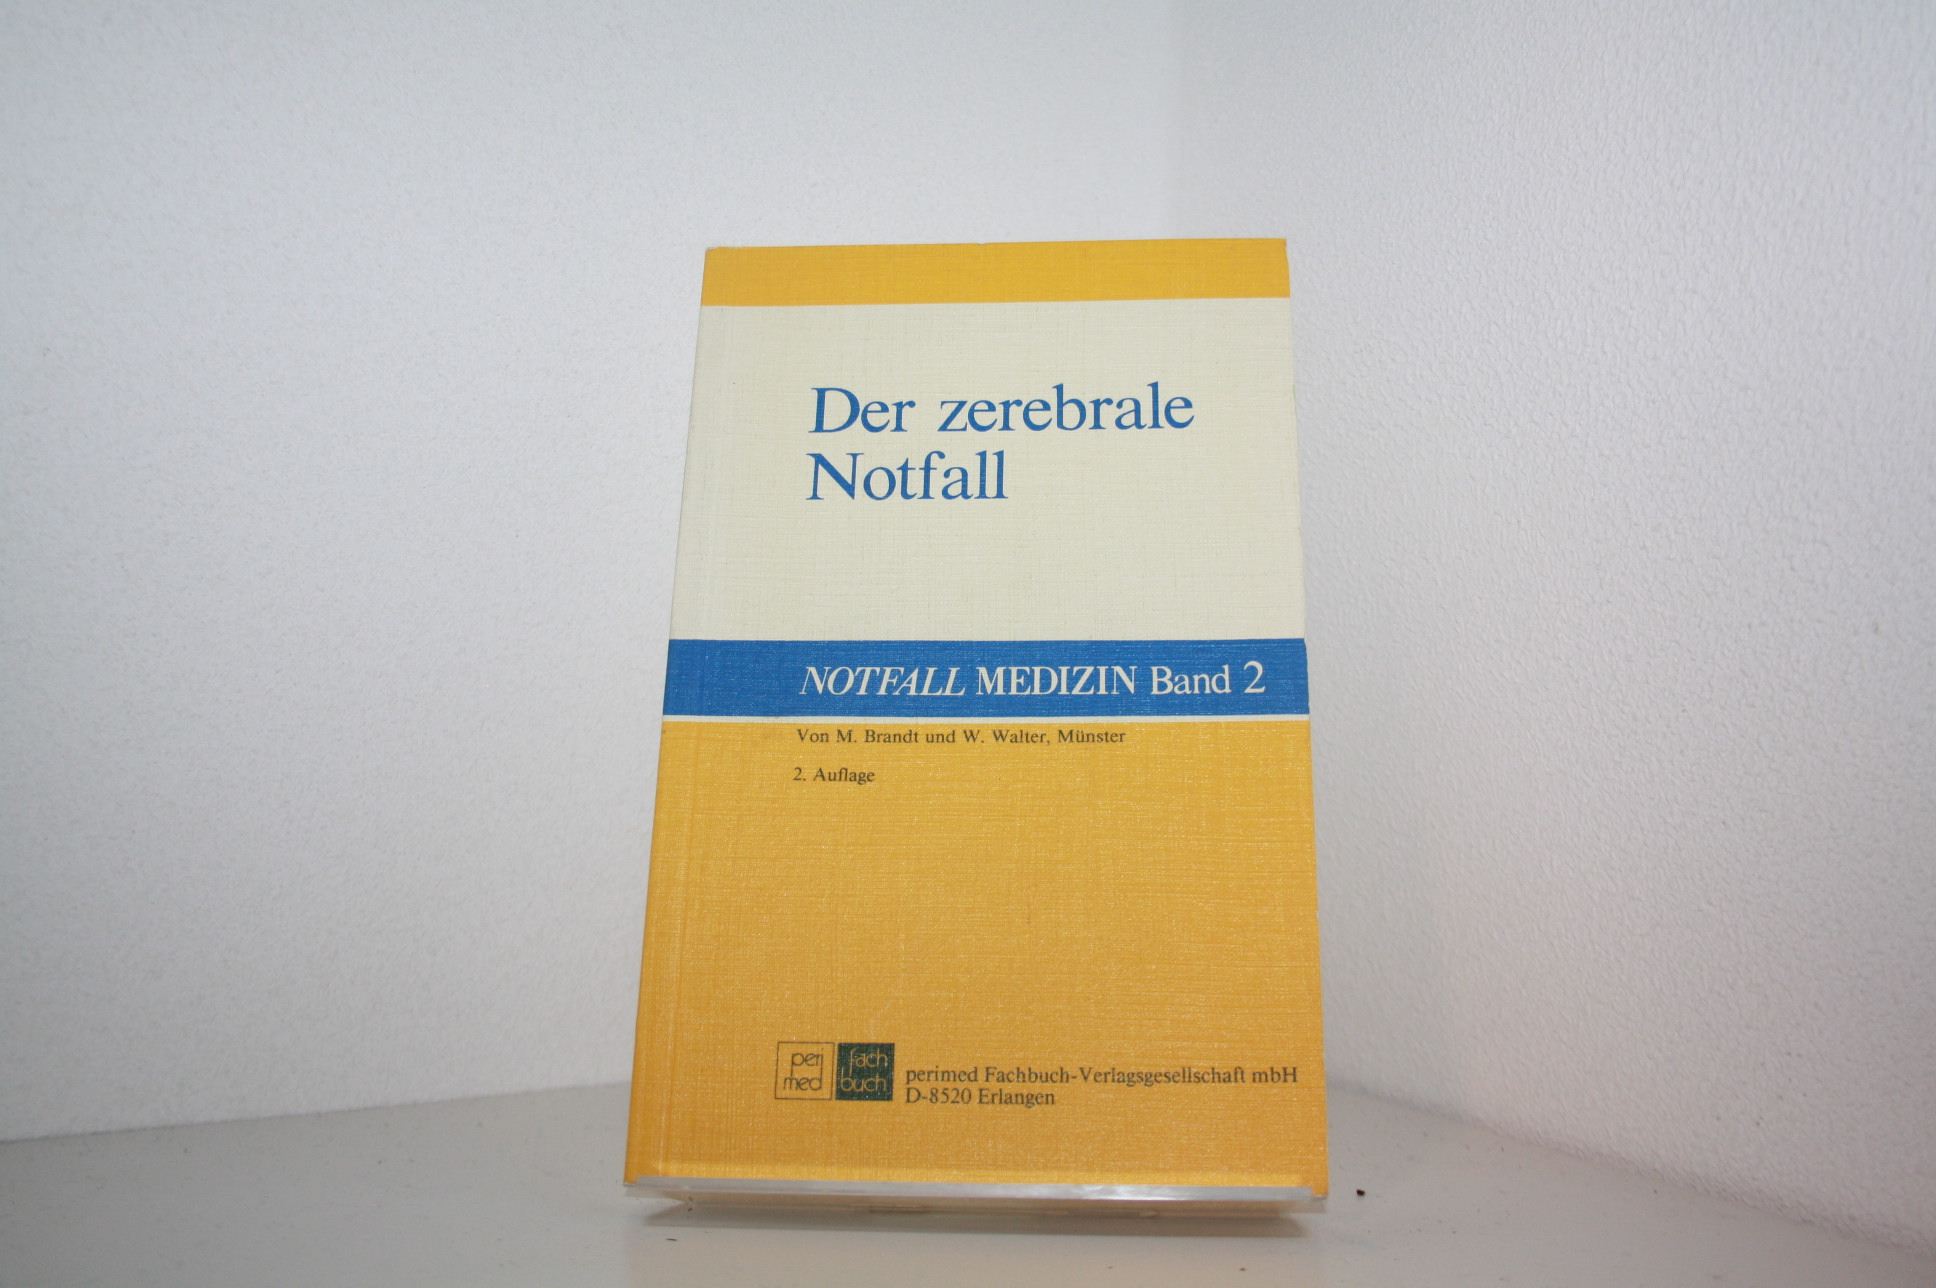 Der zerebrale Notfall. von M. Brandt u. W. Walter / Notfall-Medizin ; Bd. 2 - Brandt, Matthias und Wendelin Walter